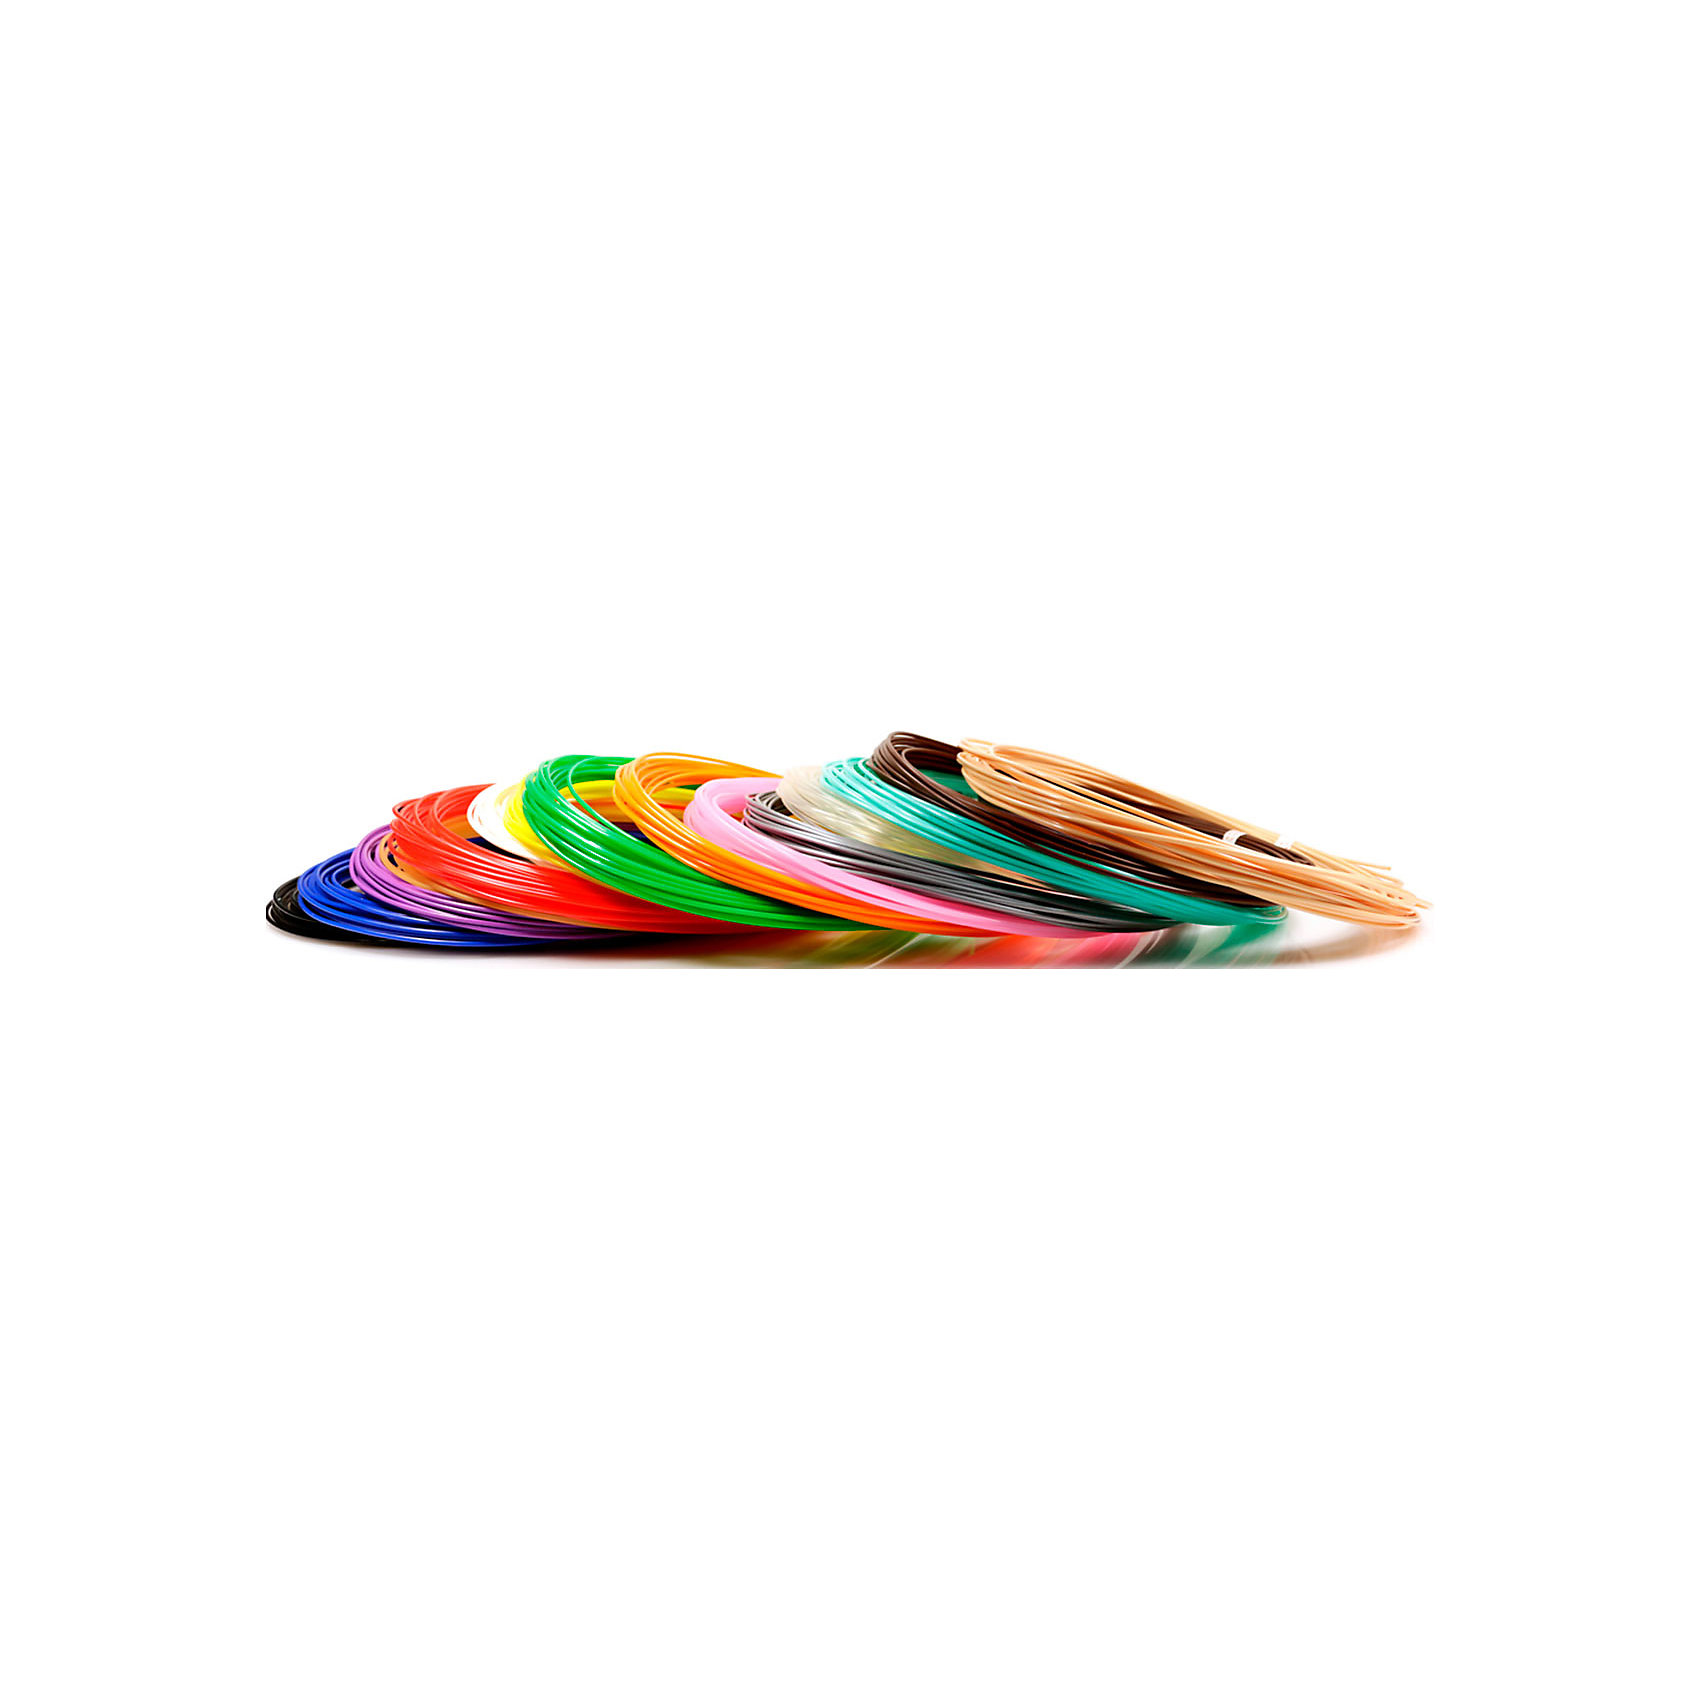 фото Набор пластика для 3D ручек Unid "PLA-15" 15 цветов, 10 м каждый